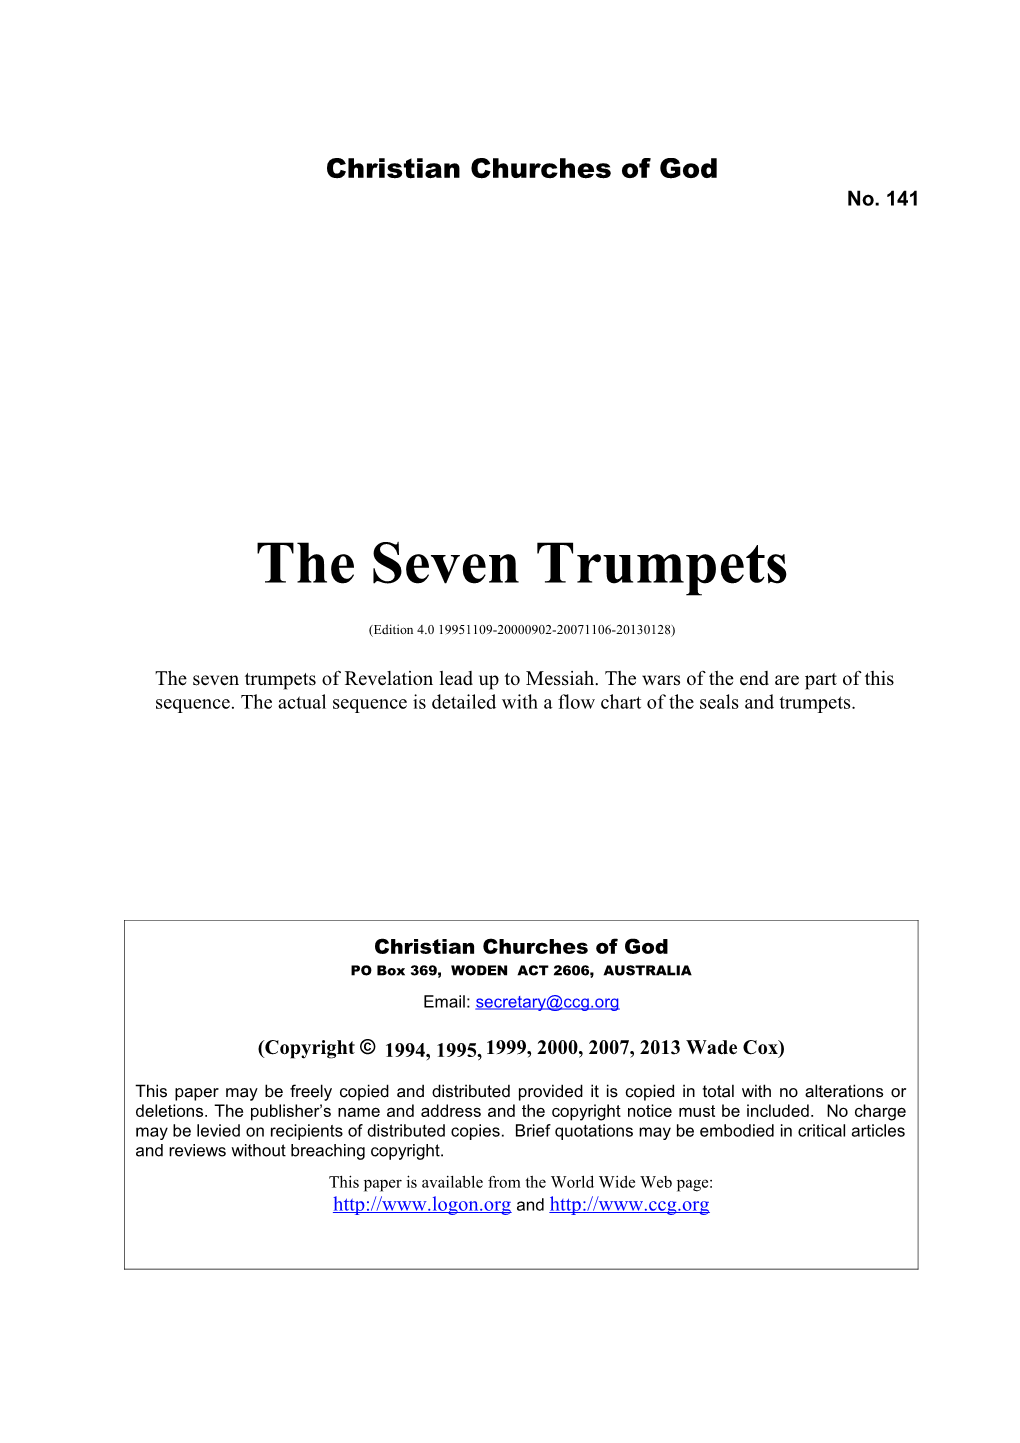 The Seven Trumpets (No. 141)